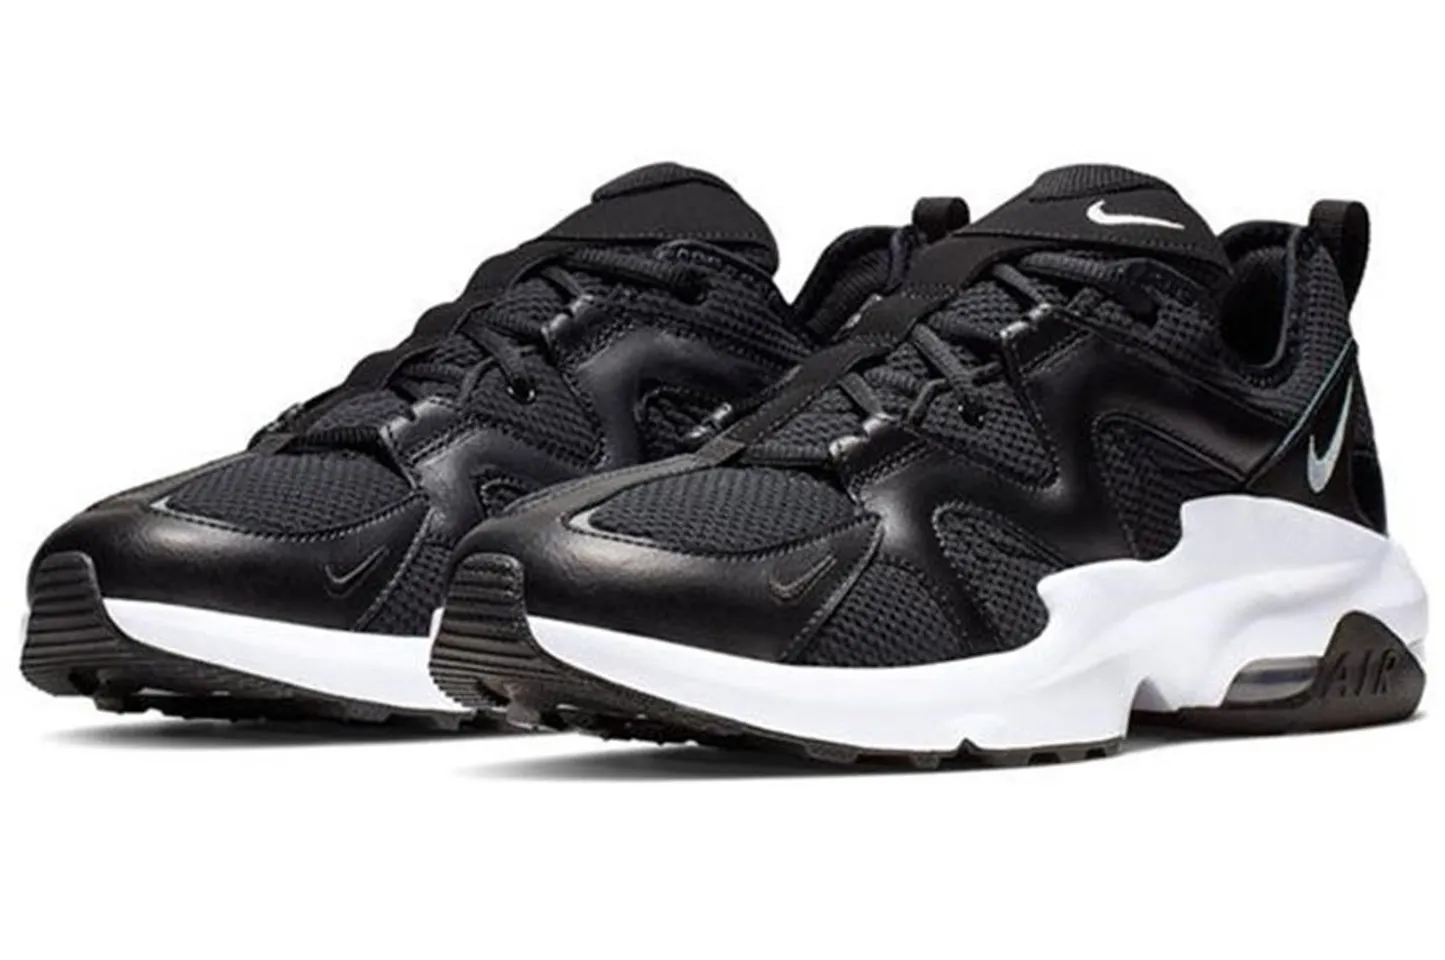 Giày thể thao Nike Air Max Graviton Men's Shoe màu đen